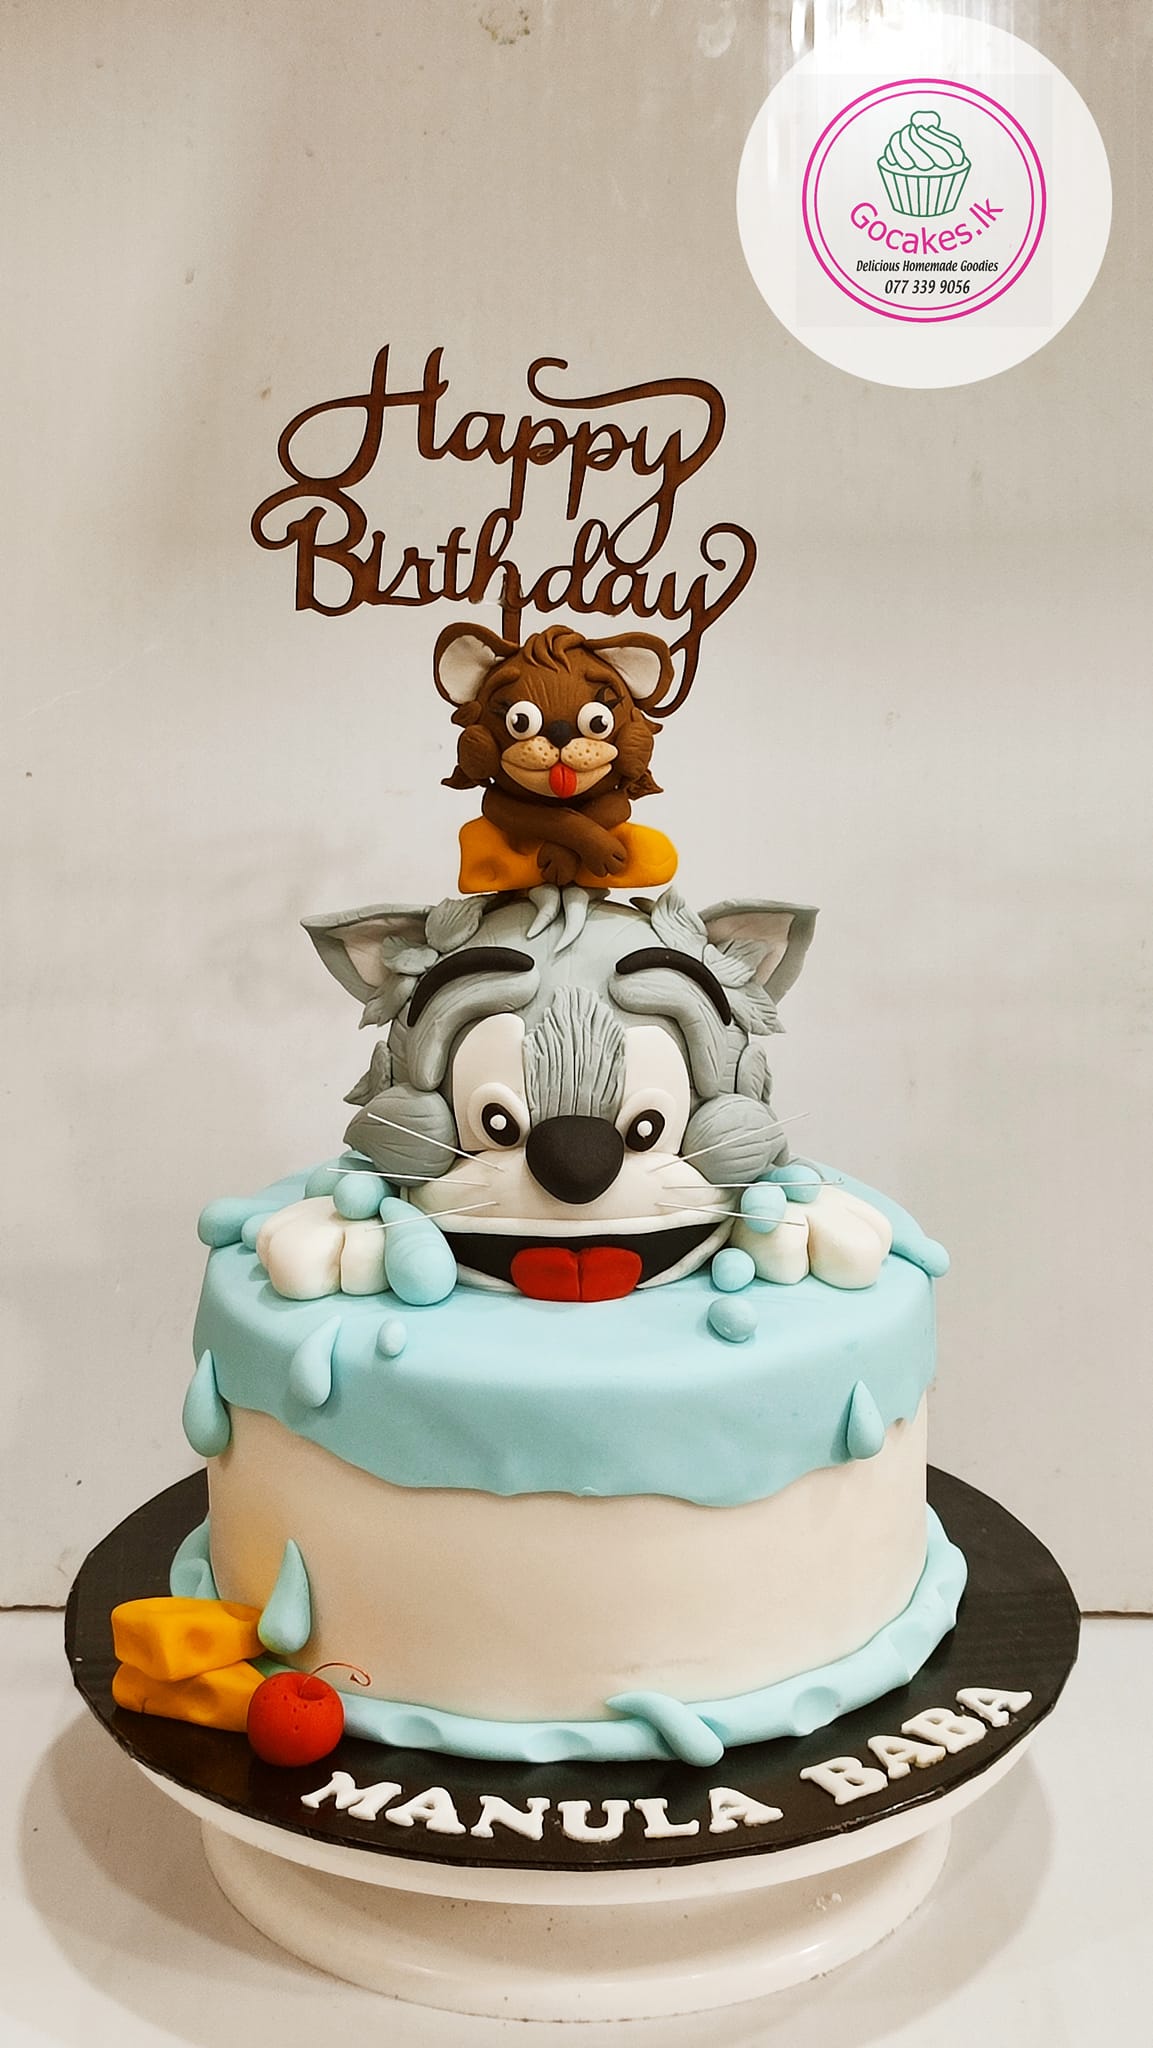 Birthday cake for Kids  | Birthday cake for boys | Cake order